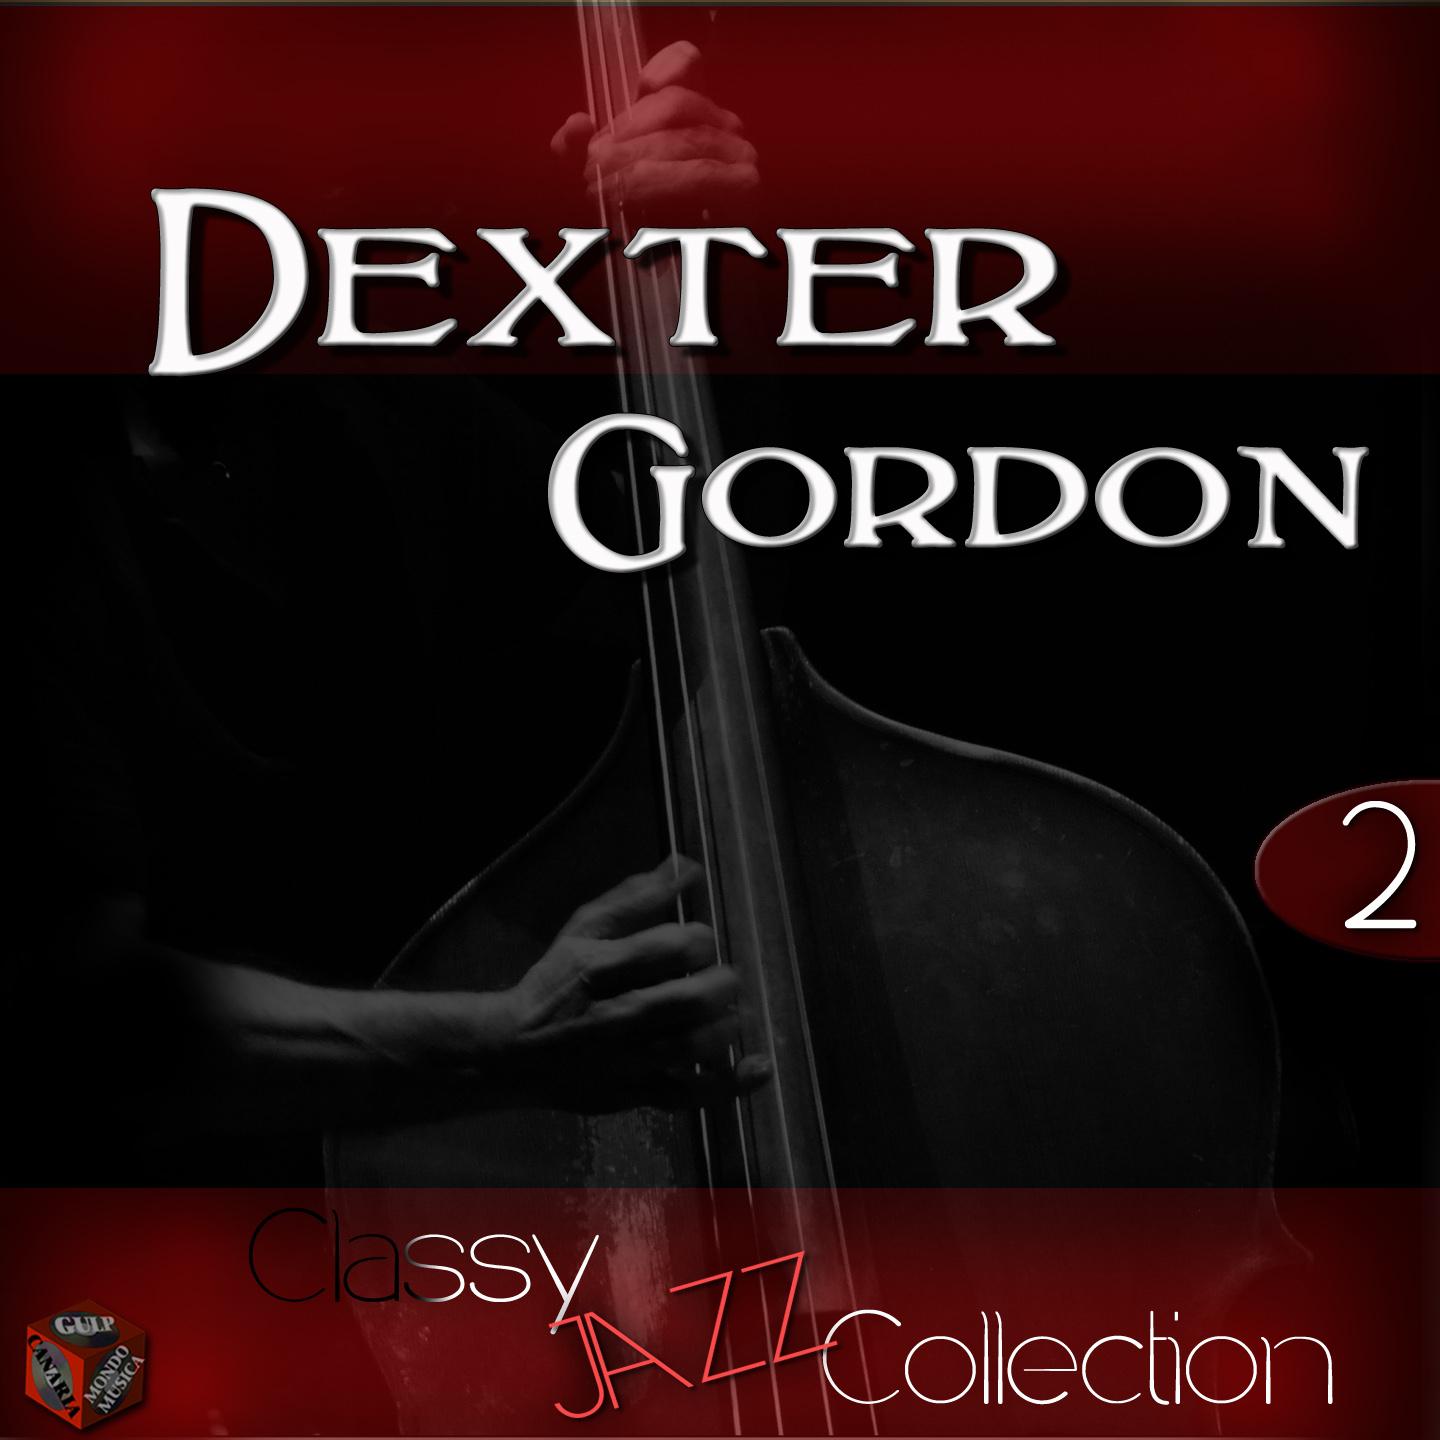 Jazz Collection: Dexter Gordon, Vol. 2